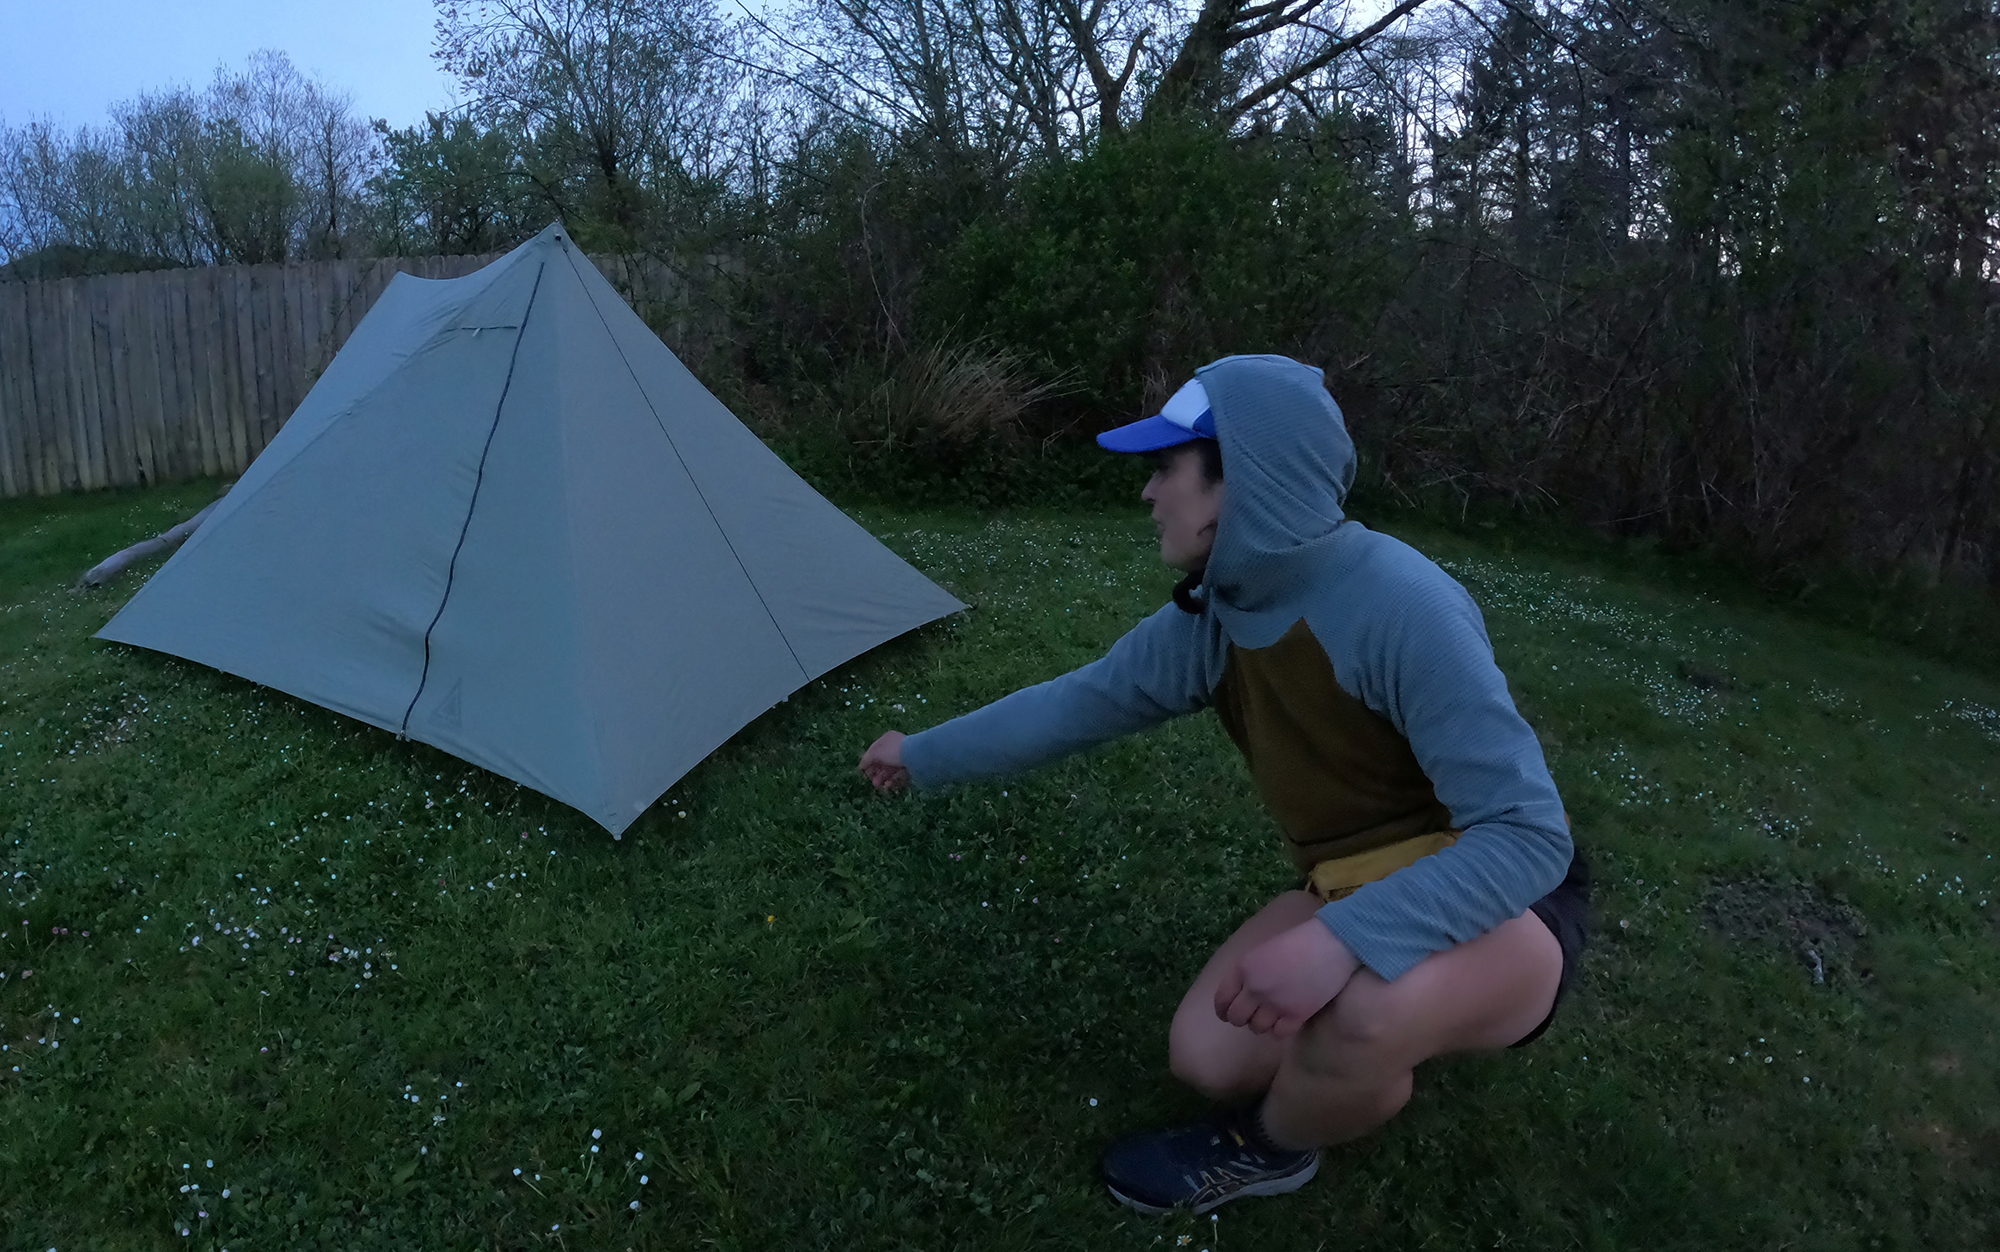 Jac âTop Shelfâ Mitchell, our most experienced tester, said that this tent was as easy to set up as a freestanding tent.